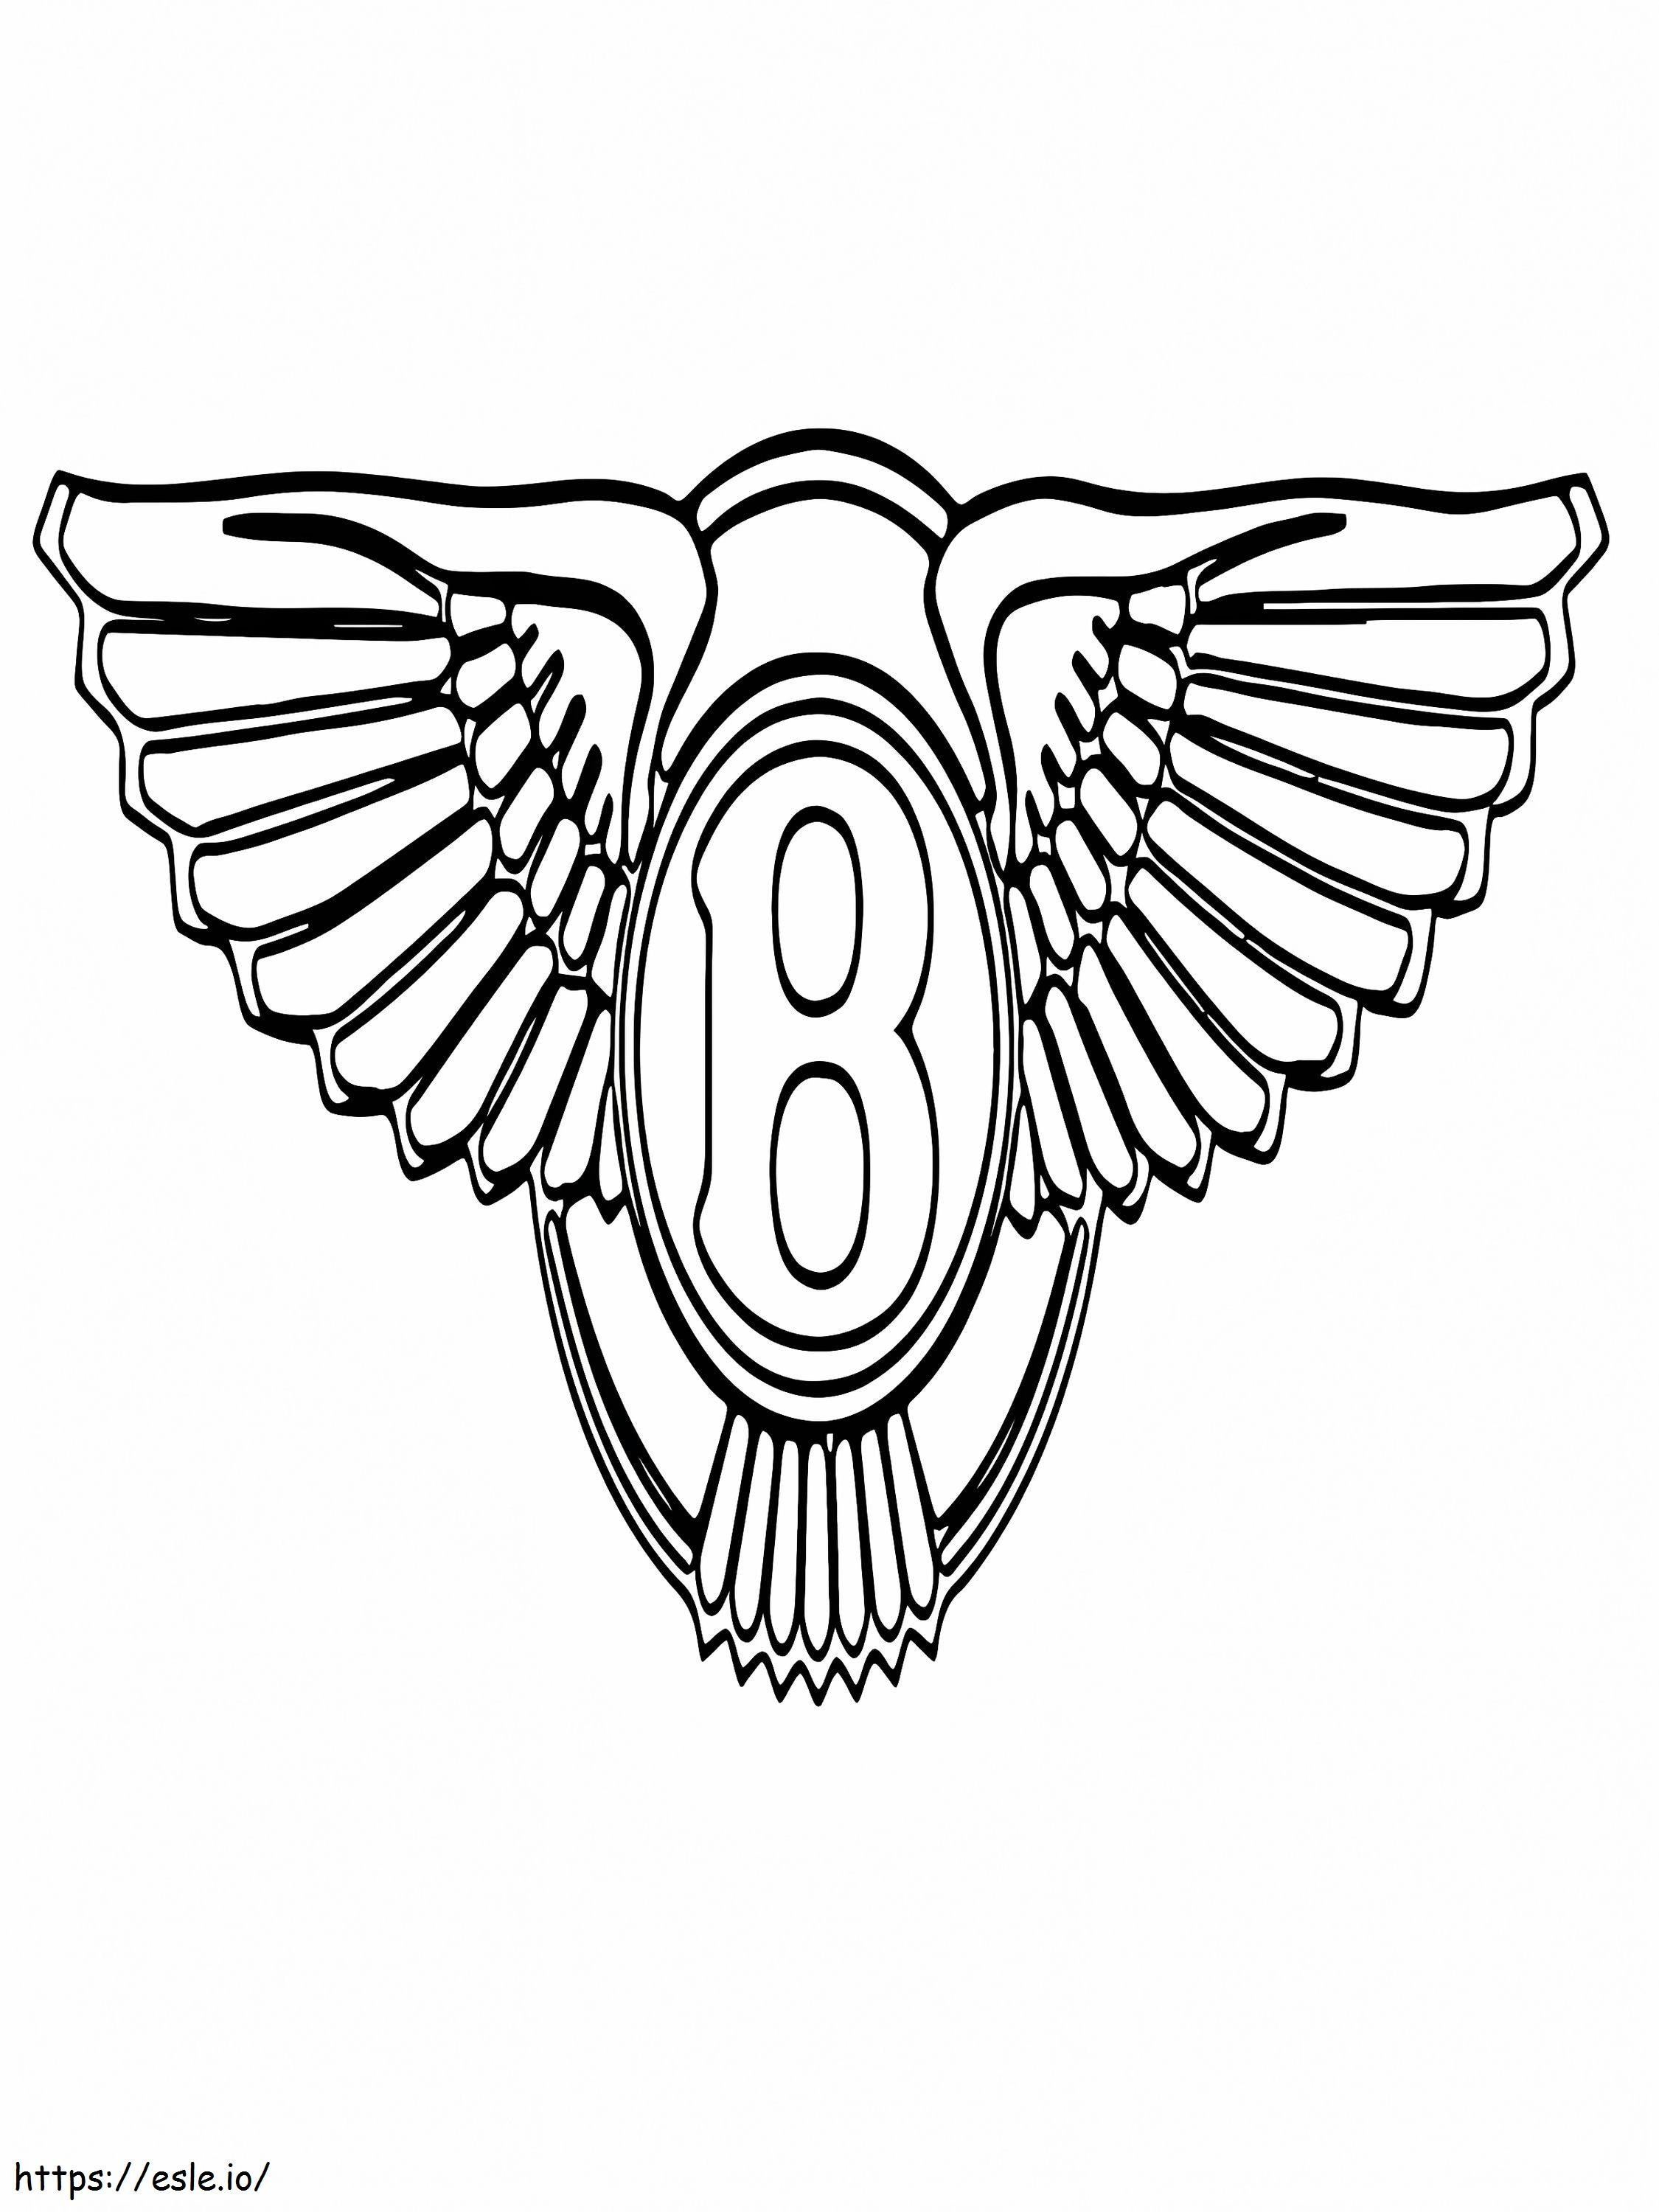 Logo dell'auto Bentley da colorare